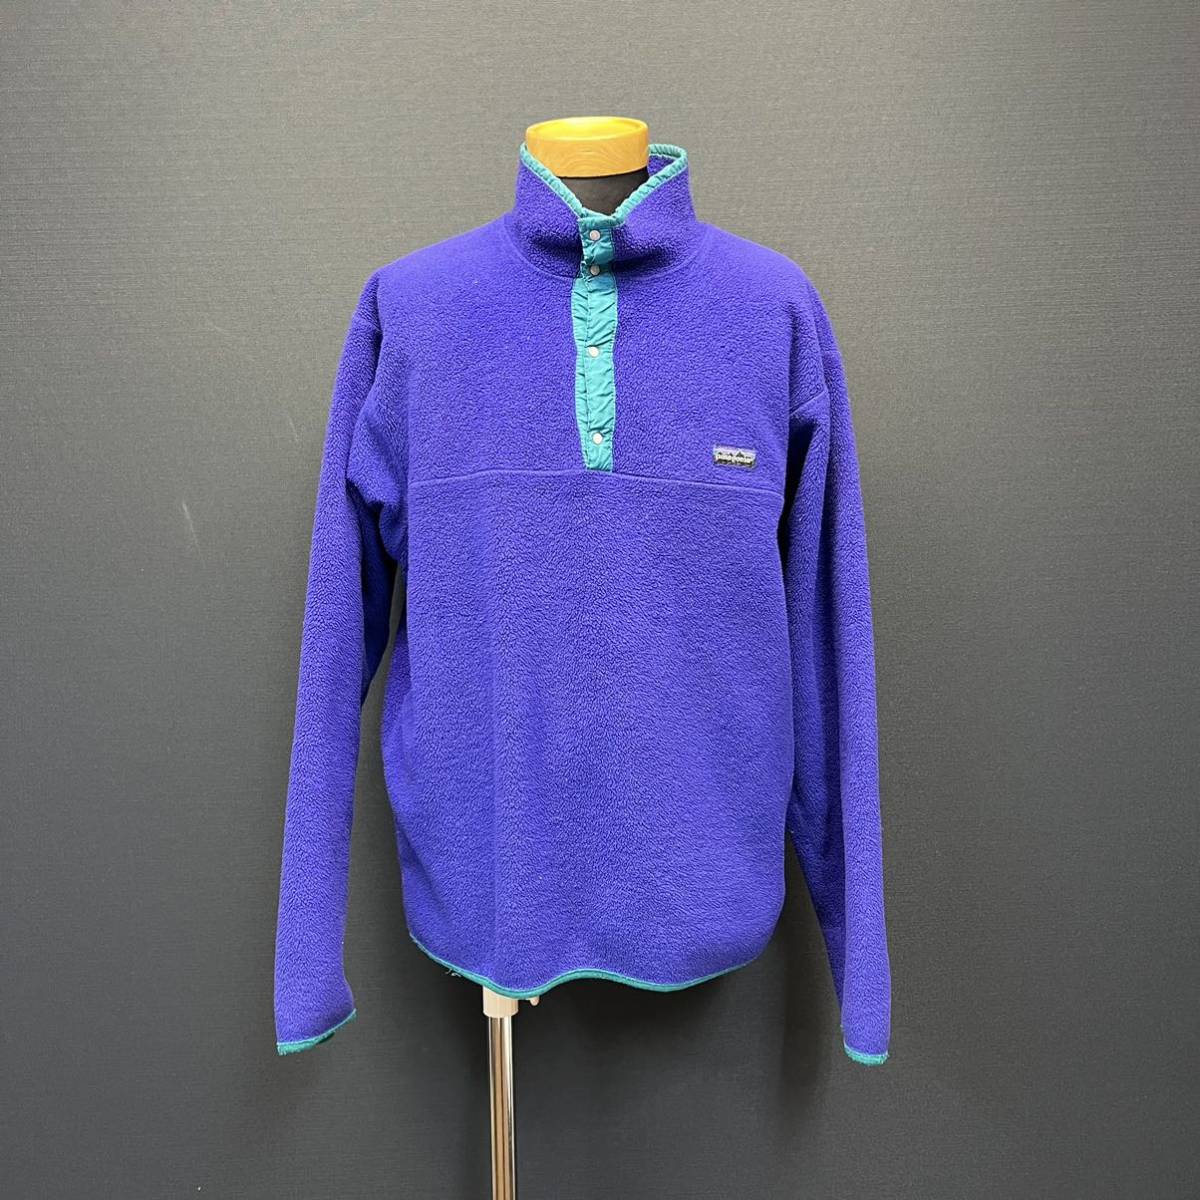 Patagonia Snap-T Fleece Jacket パタゴニア スナップT フリースジャケット size L ブルー メンズ アウター 長袖